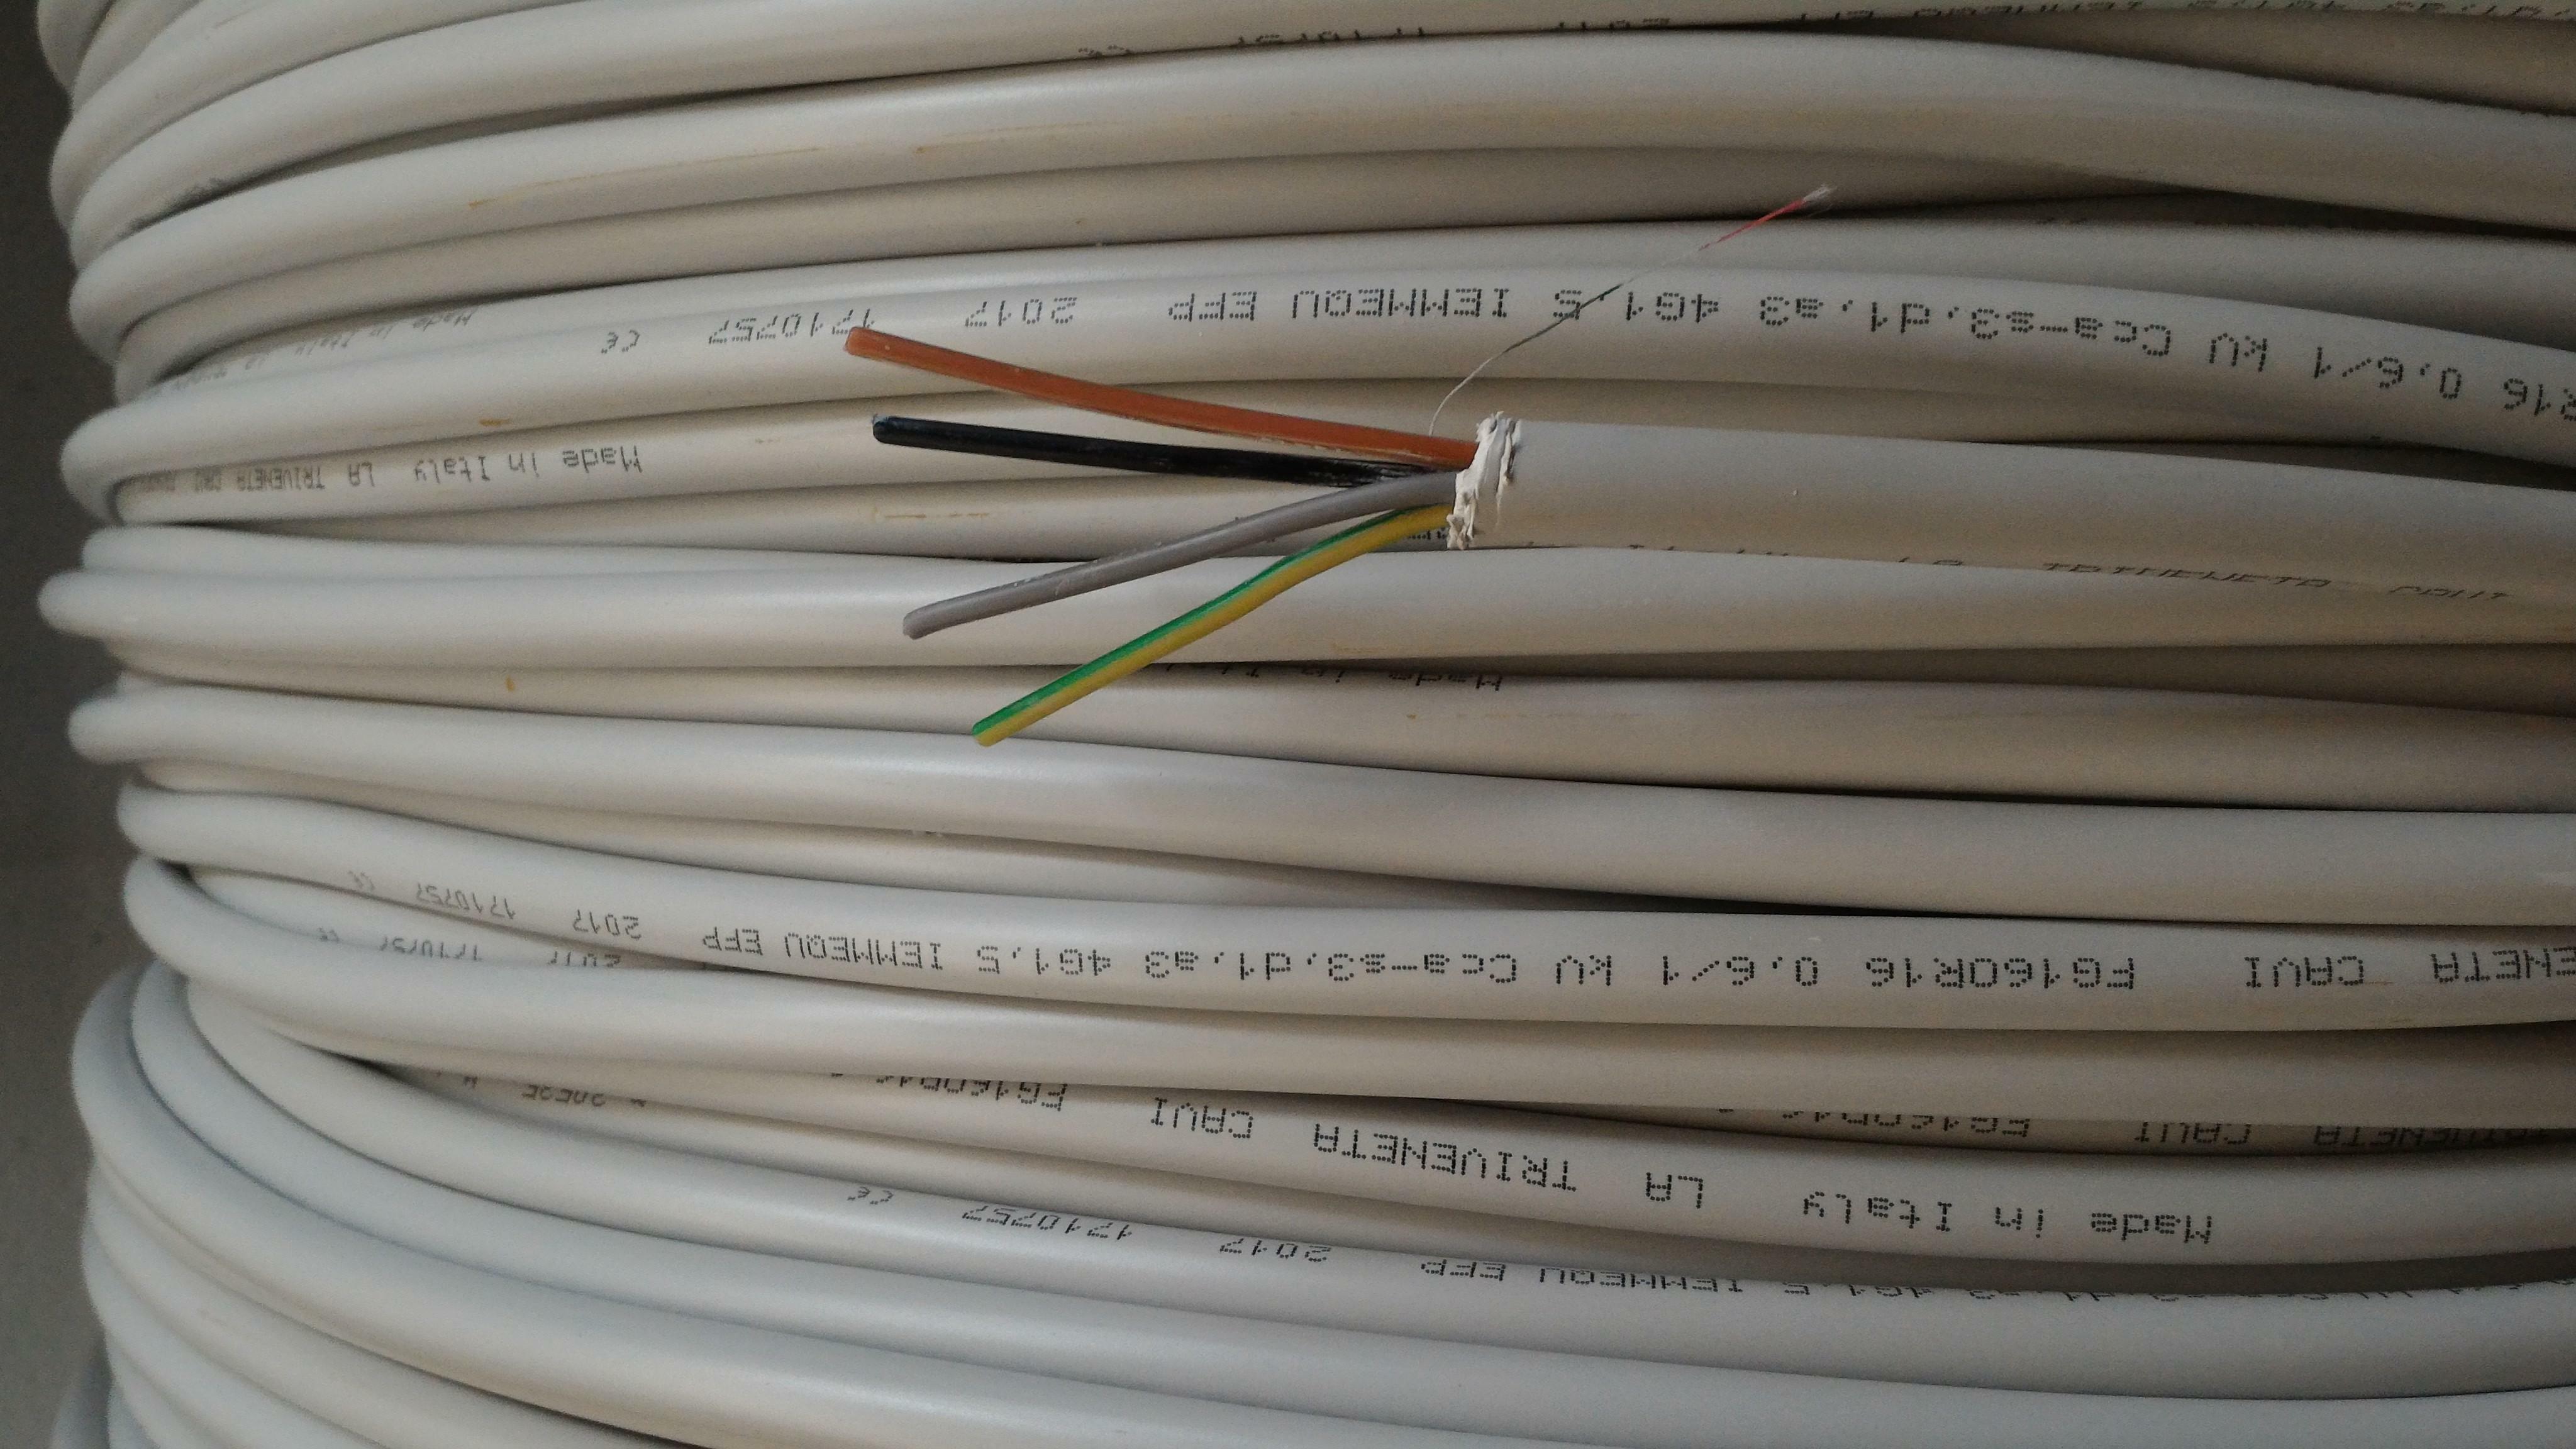 cavi cavi al metro cavo fg16or16 multipolare fg16 4 conduttori da 1.5mmq con giallo verde fg7-4gx1,5 fg16or16-4gx1,5